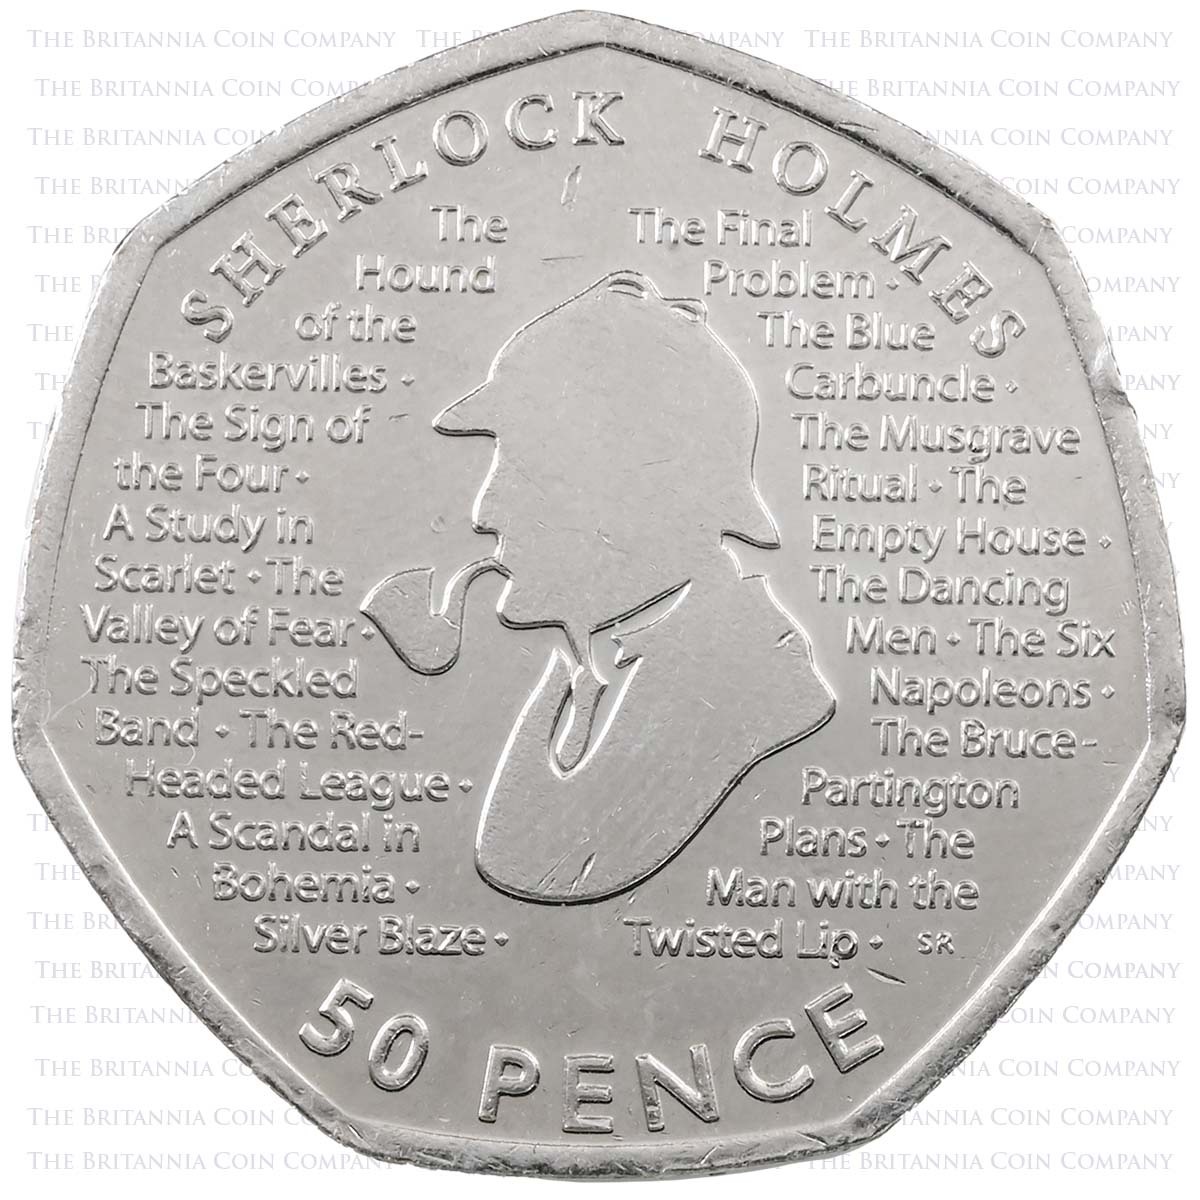 2019 Sherlock Holmes Arthur Conan Doyle Circulated Fifty Pence Coin Reverse